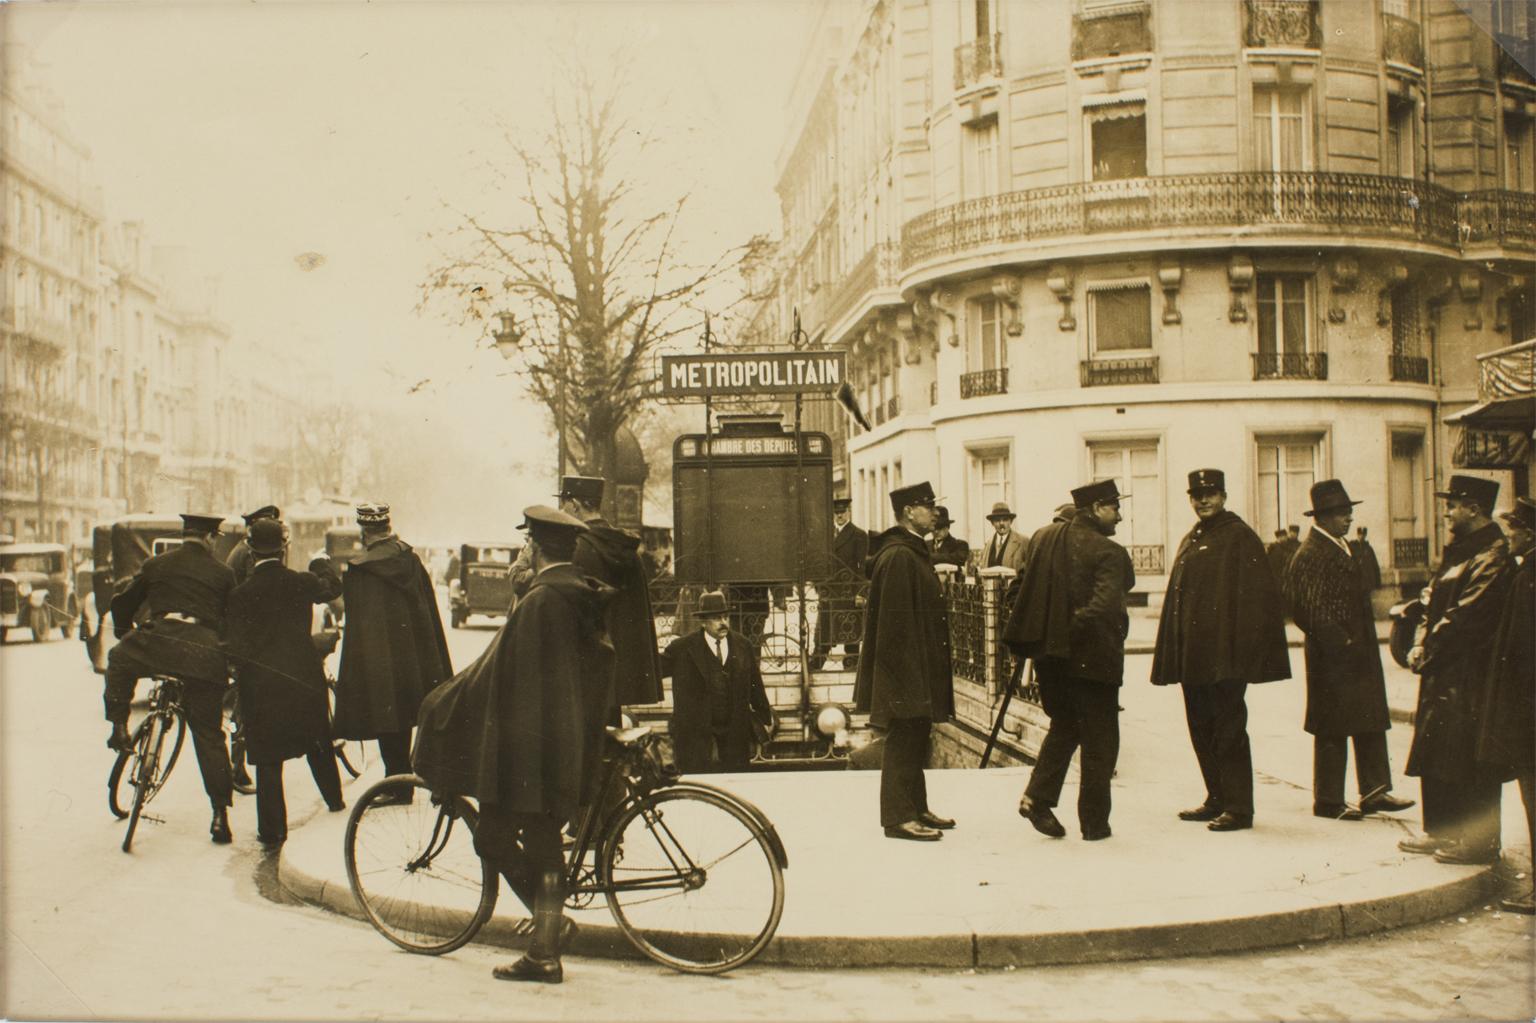 Press Agency Keystone View Co. Black and White Photograph – Polizisten in Paris, um 1930 – Silber-Gelatine-Schwarz-Weiß-Fotografie